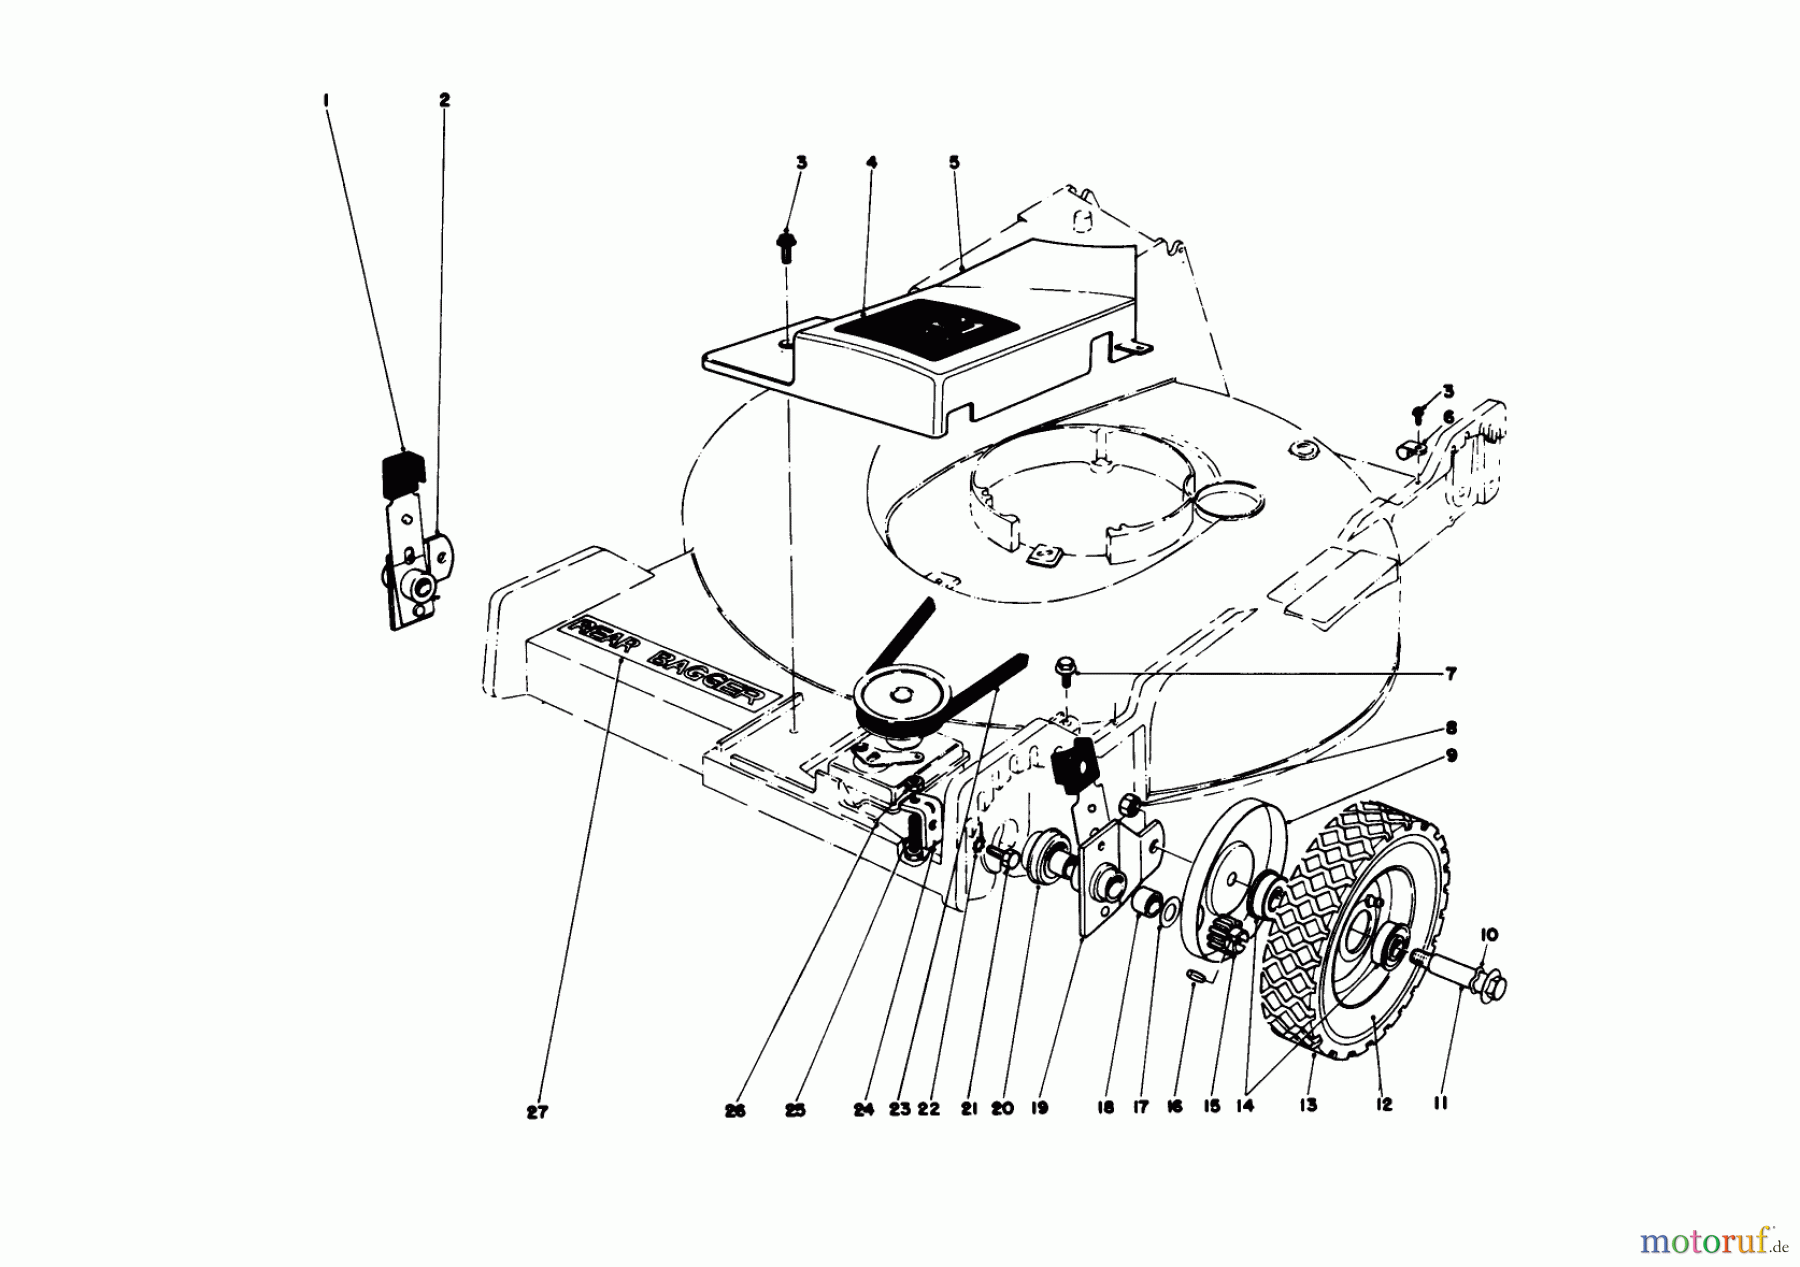  Toro Neu Mowers, Walk-Behind Seite 1 20690 - Toro Lawnmower, 1978 (8000001-8999999) FRONT WHEEL AND PIVOT ARM ASSEMBLY